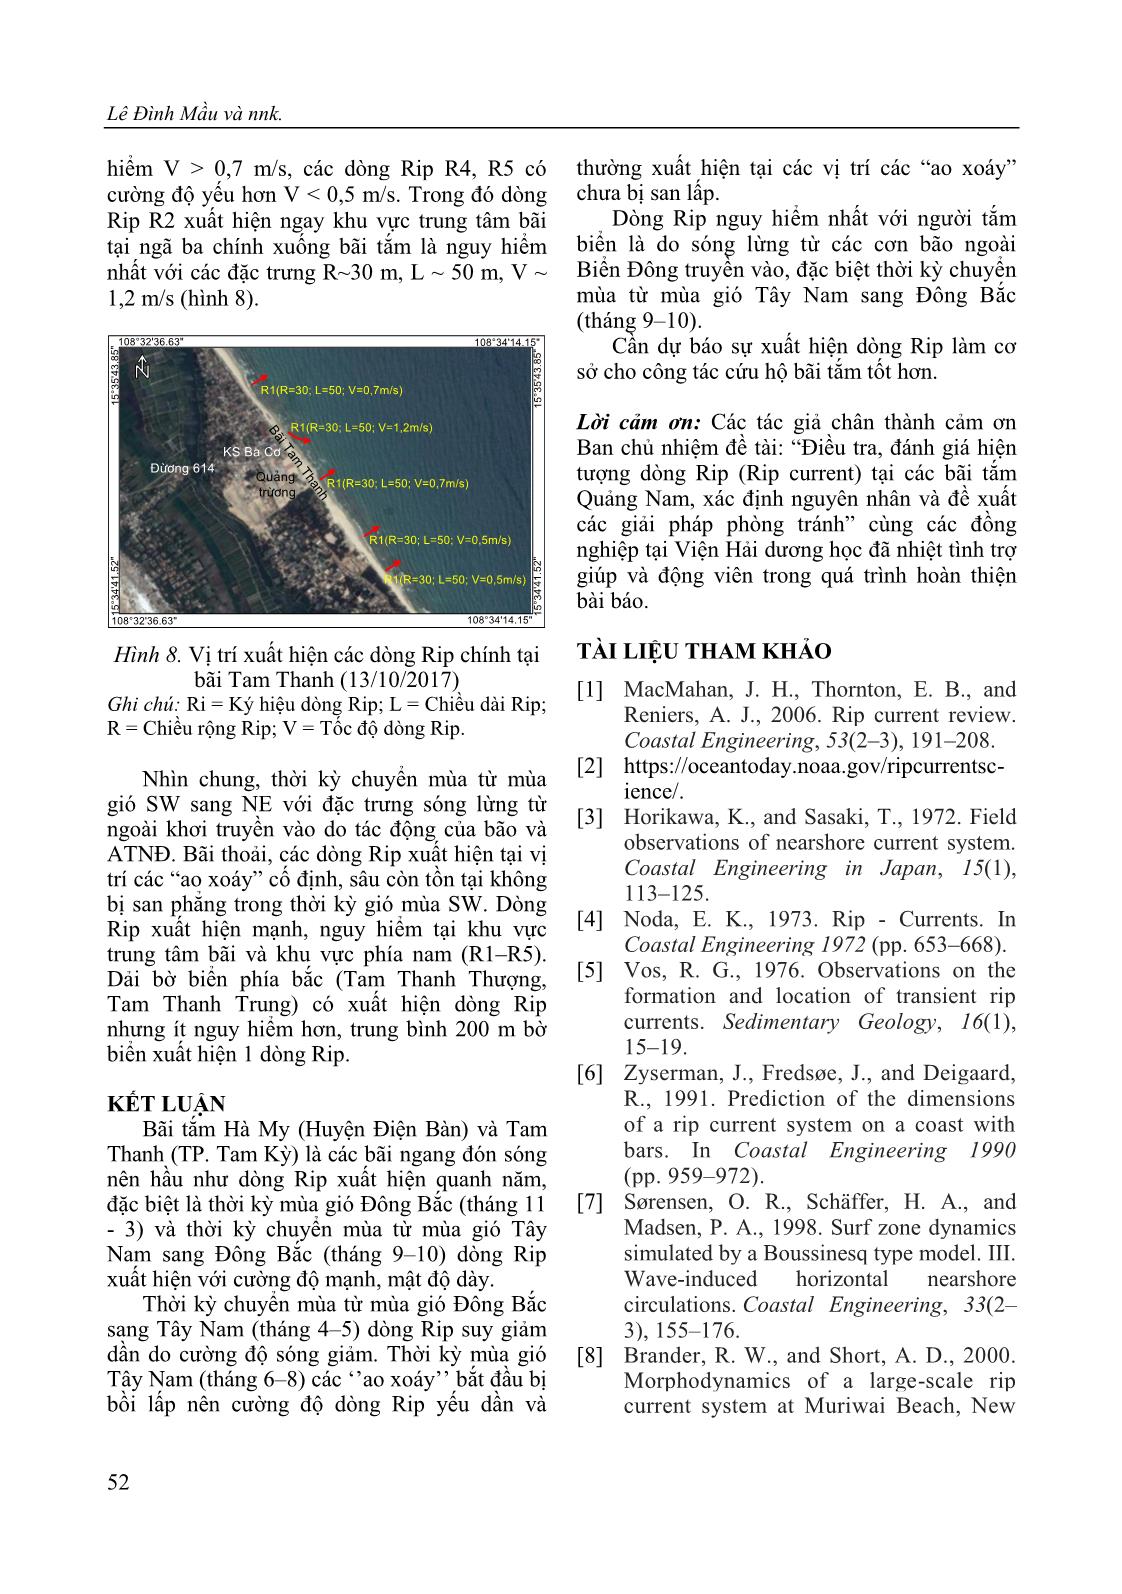 Đặc điểm xuất hiện dòng Rip (Rip current) tại bãi tắm Hà My (Điện Bàn), Tam Thanh (Tam Kỳ) tỉnh Quảng Nam trang 10